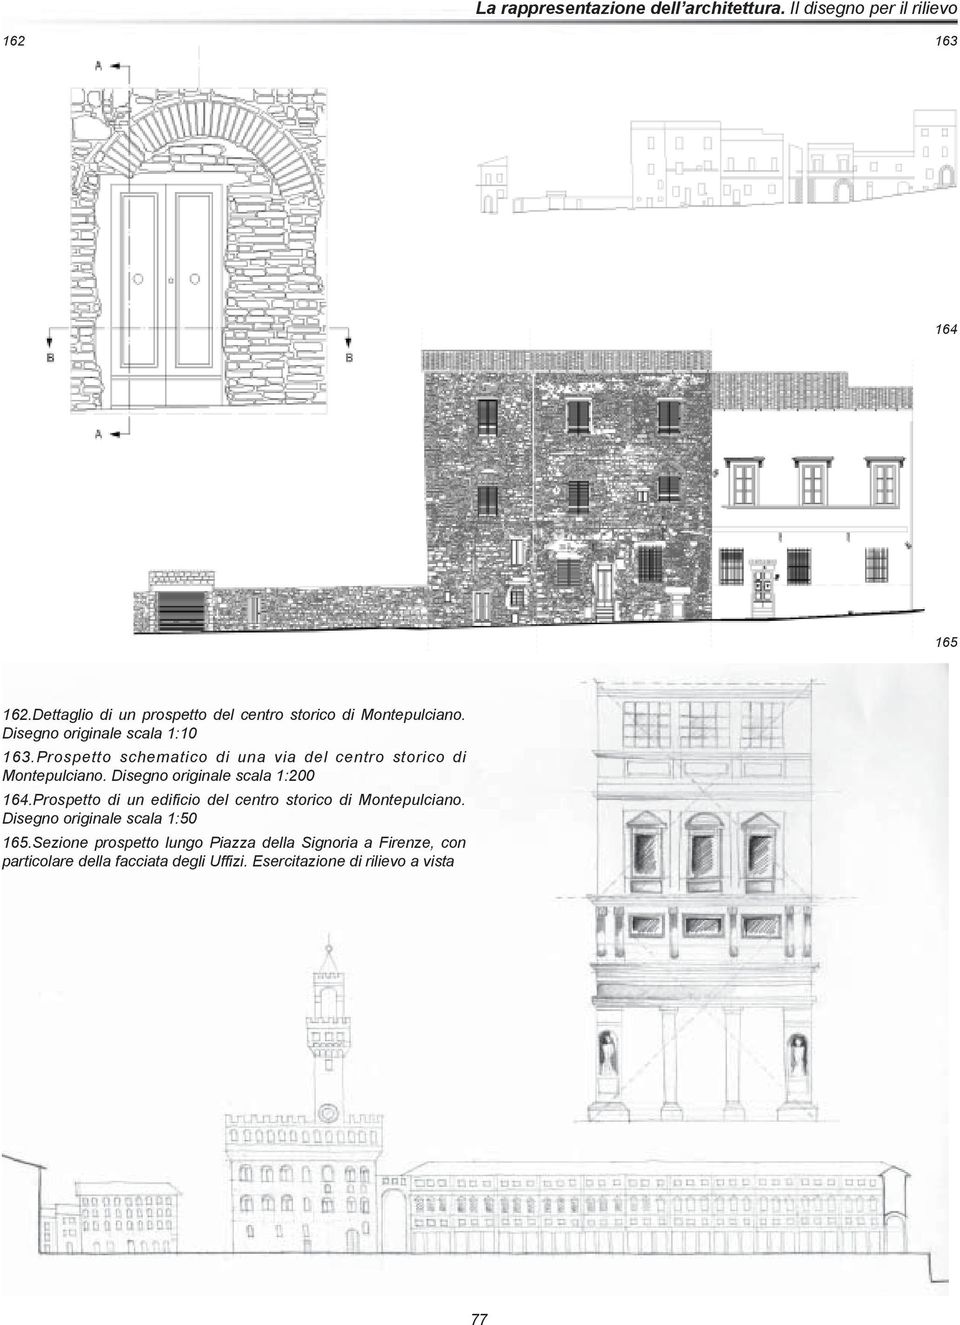 Disegno originale scala 1:200 164.Prospetto di un edificio del centro storico di Montepulciano.